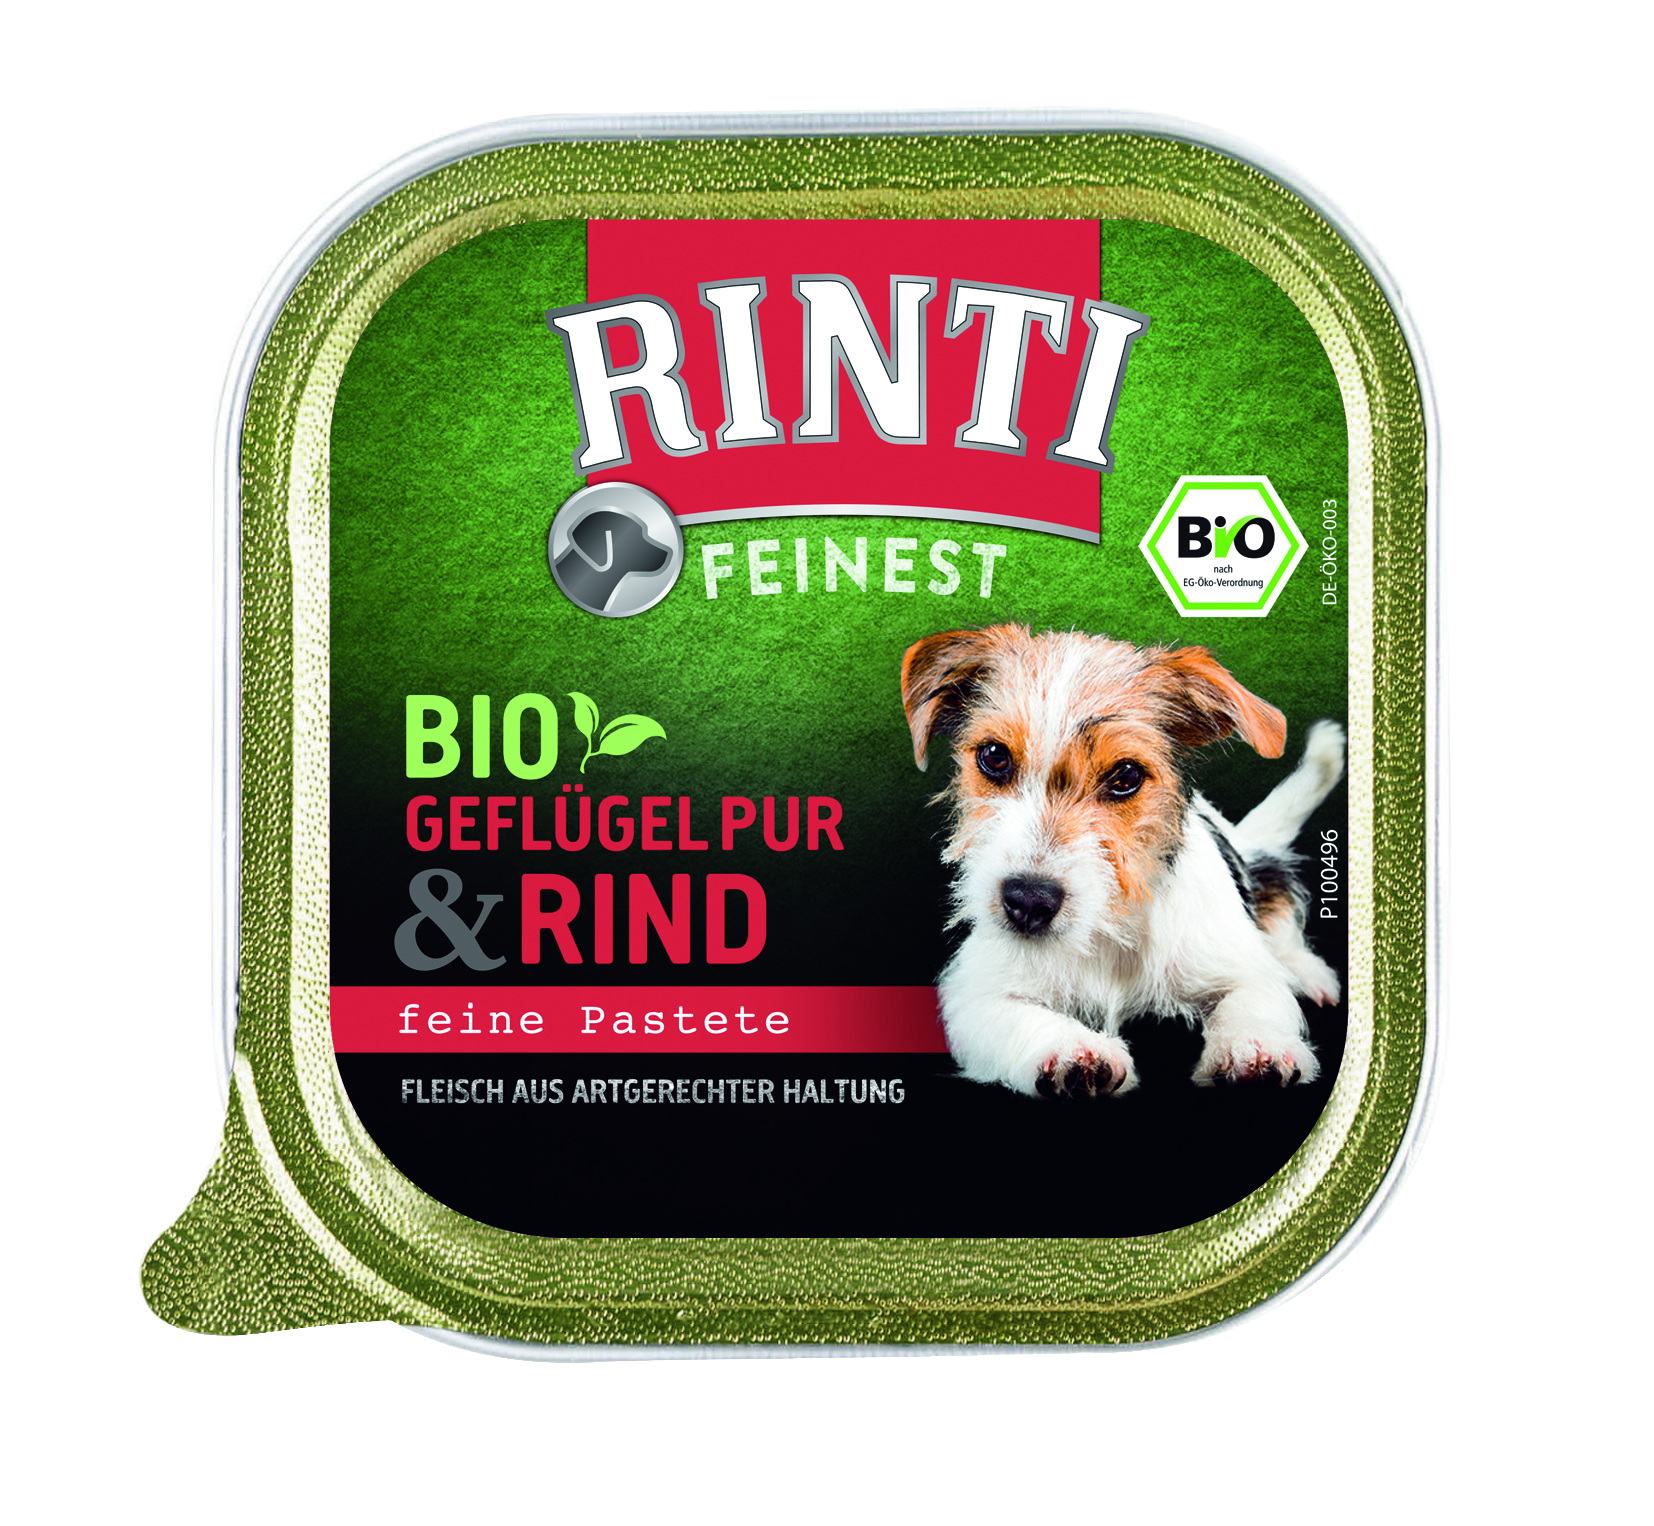 Rinti Feinest Bio Geflügel & Rind 150g